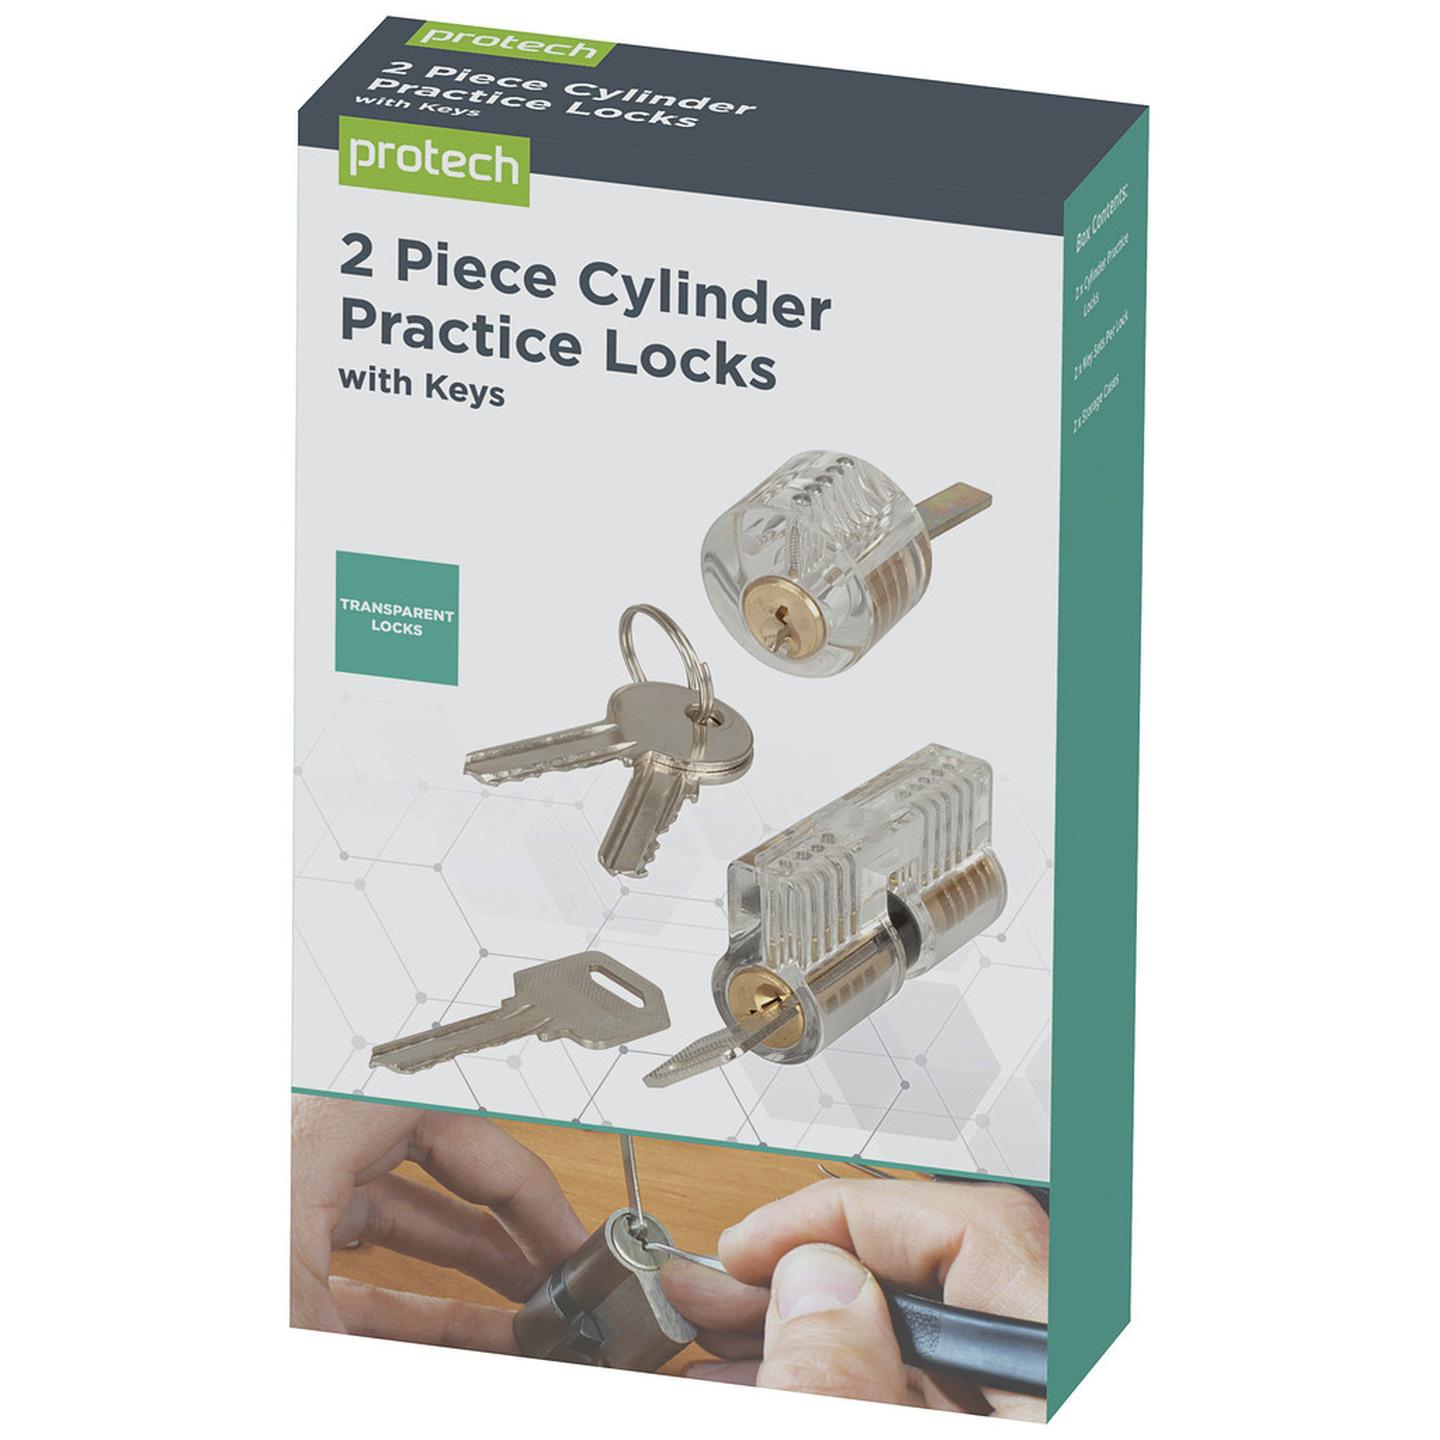 2 Piece Cylinder Practice Locks